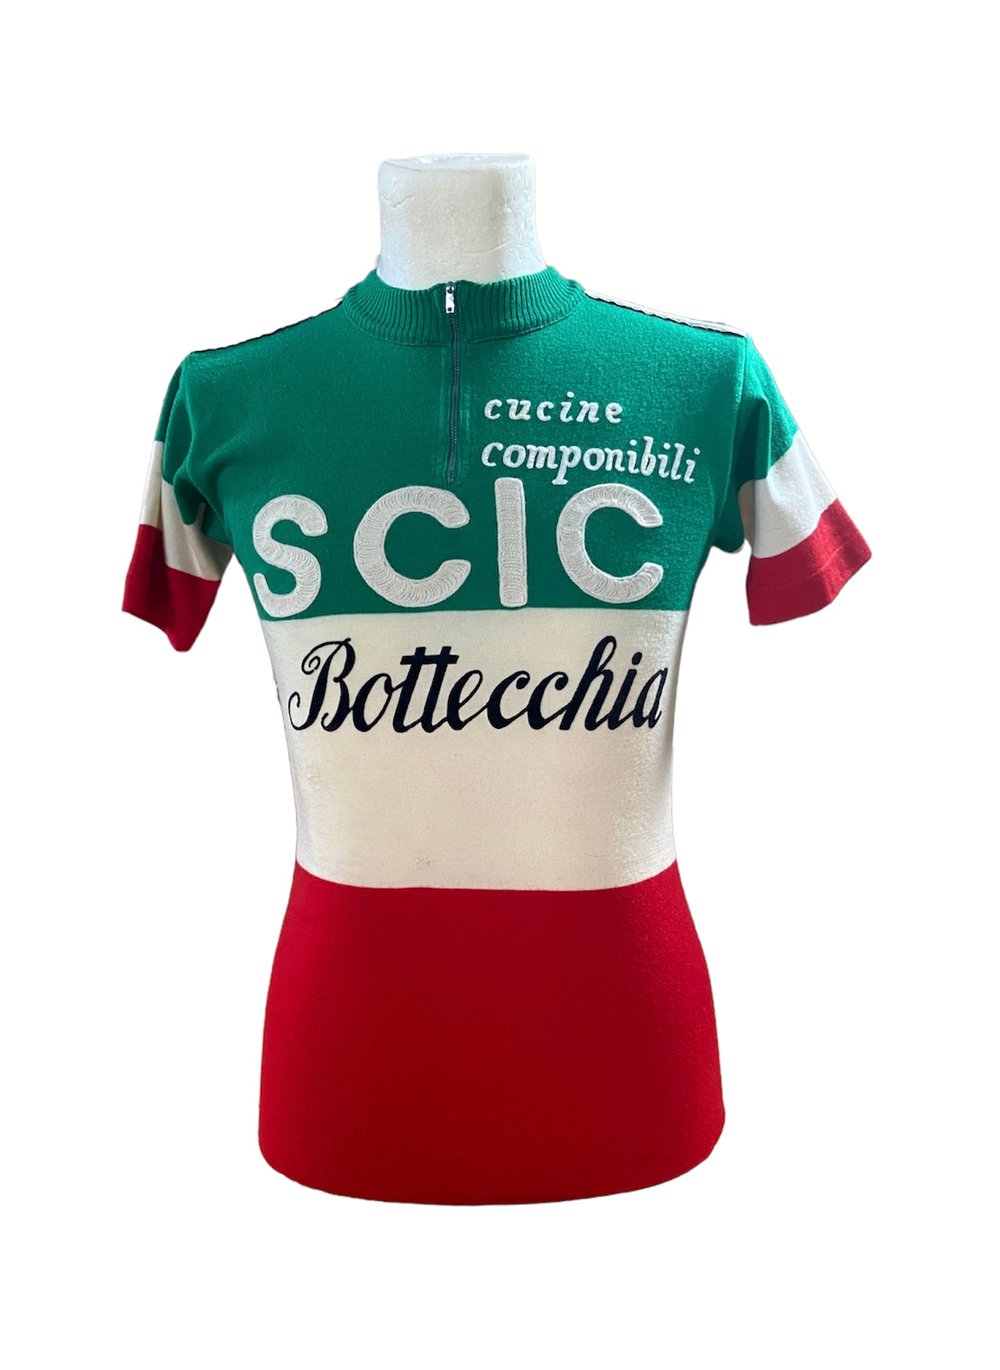 Enrico Paolini - 1978 - SCIC Bottecchia